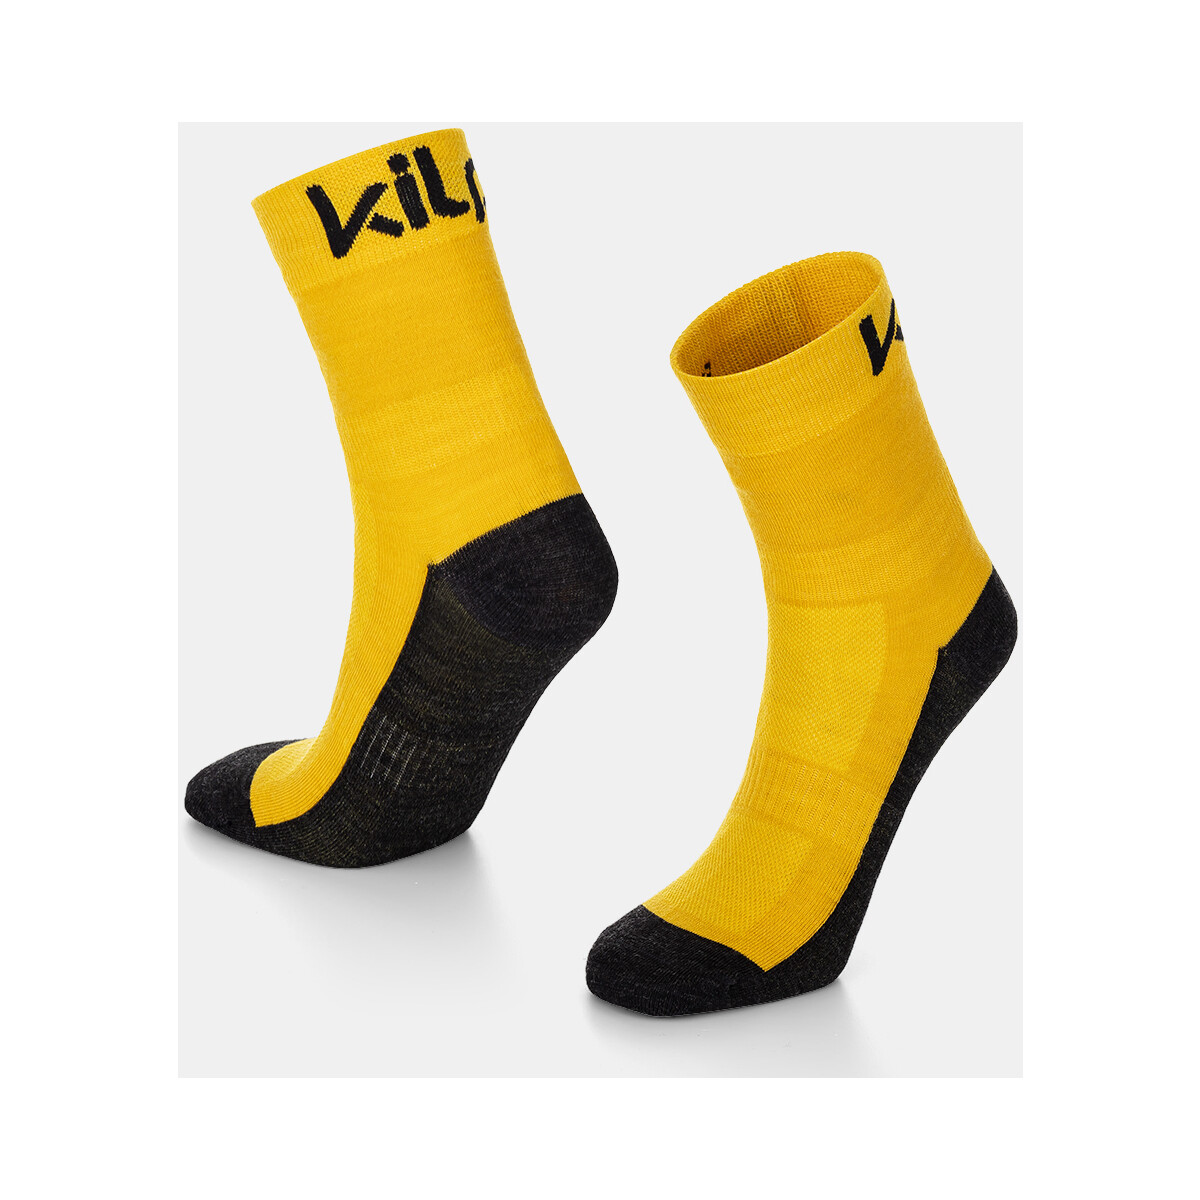 Spodní prádlo Sportovní ponožky  Kilpi Unisex outdoorové ponožky  LIRIN-U Other